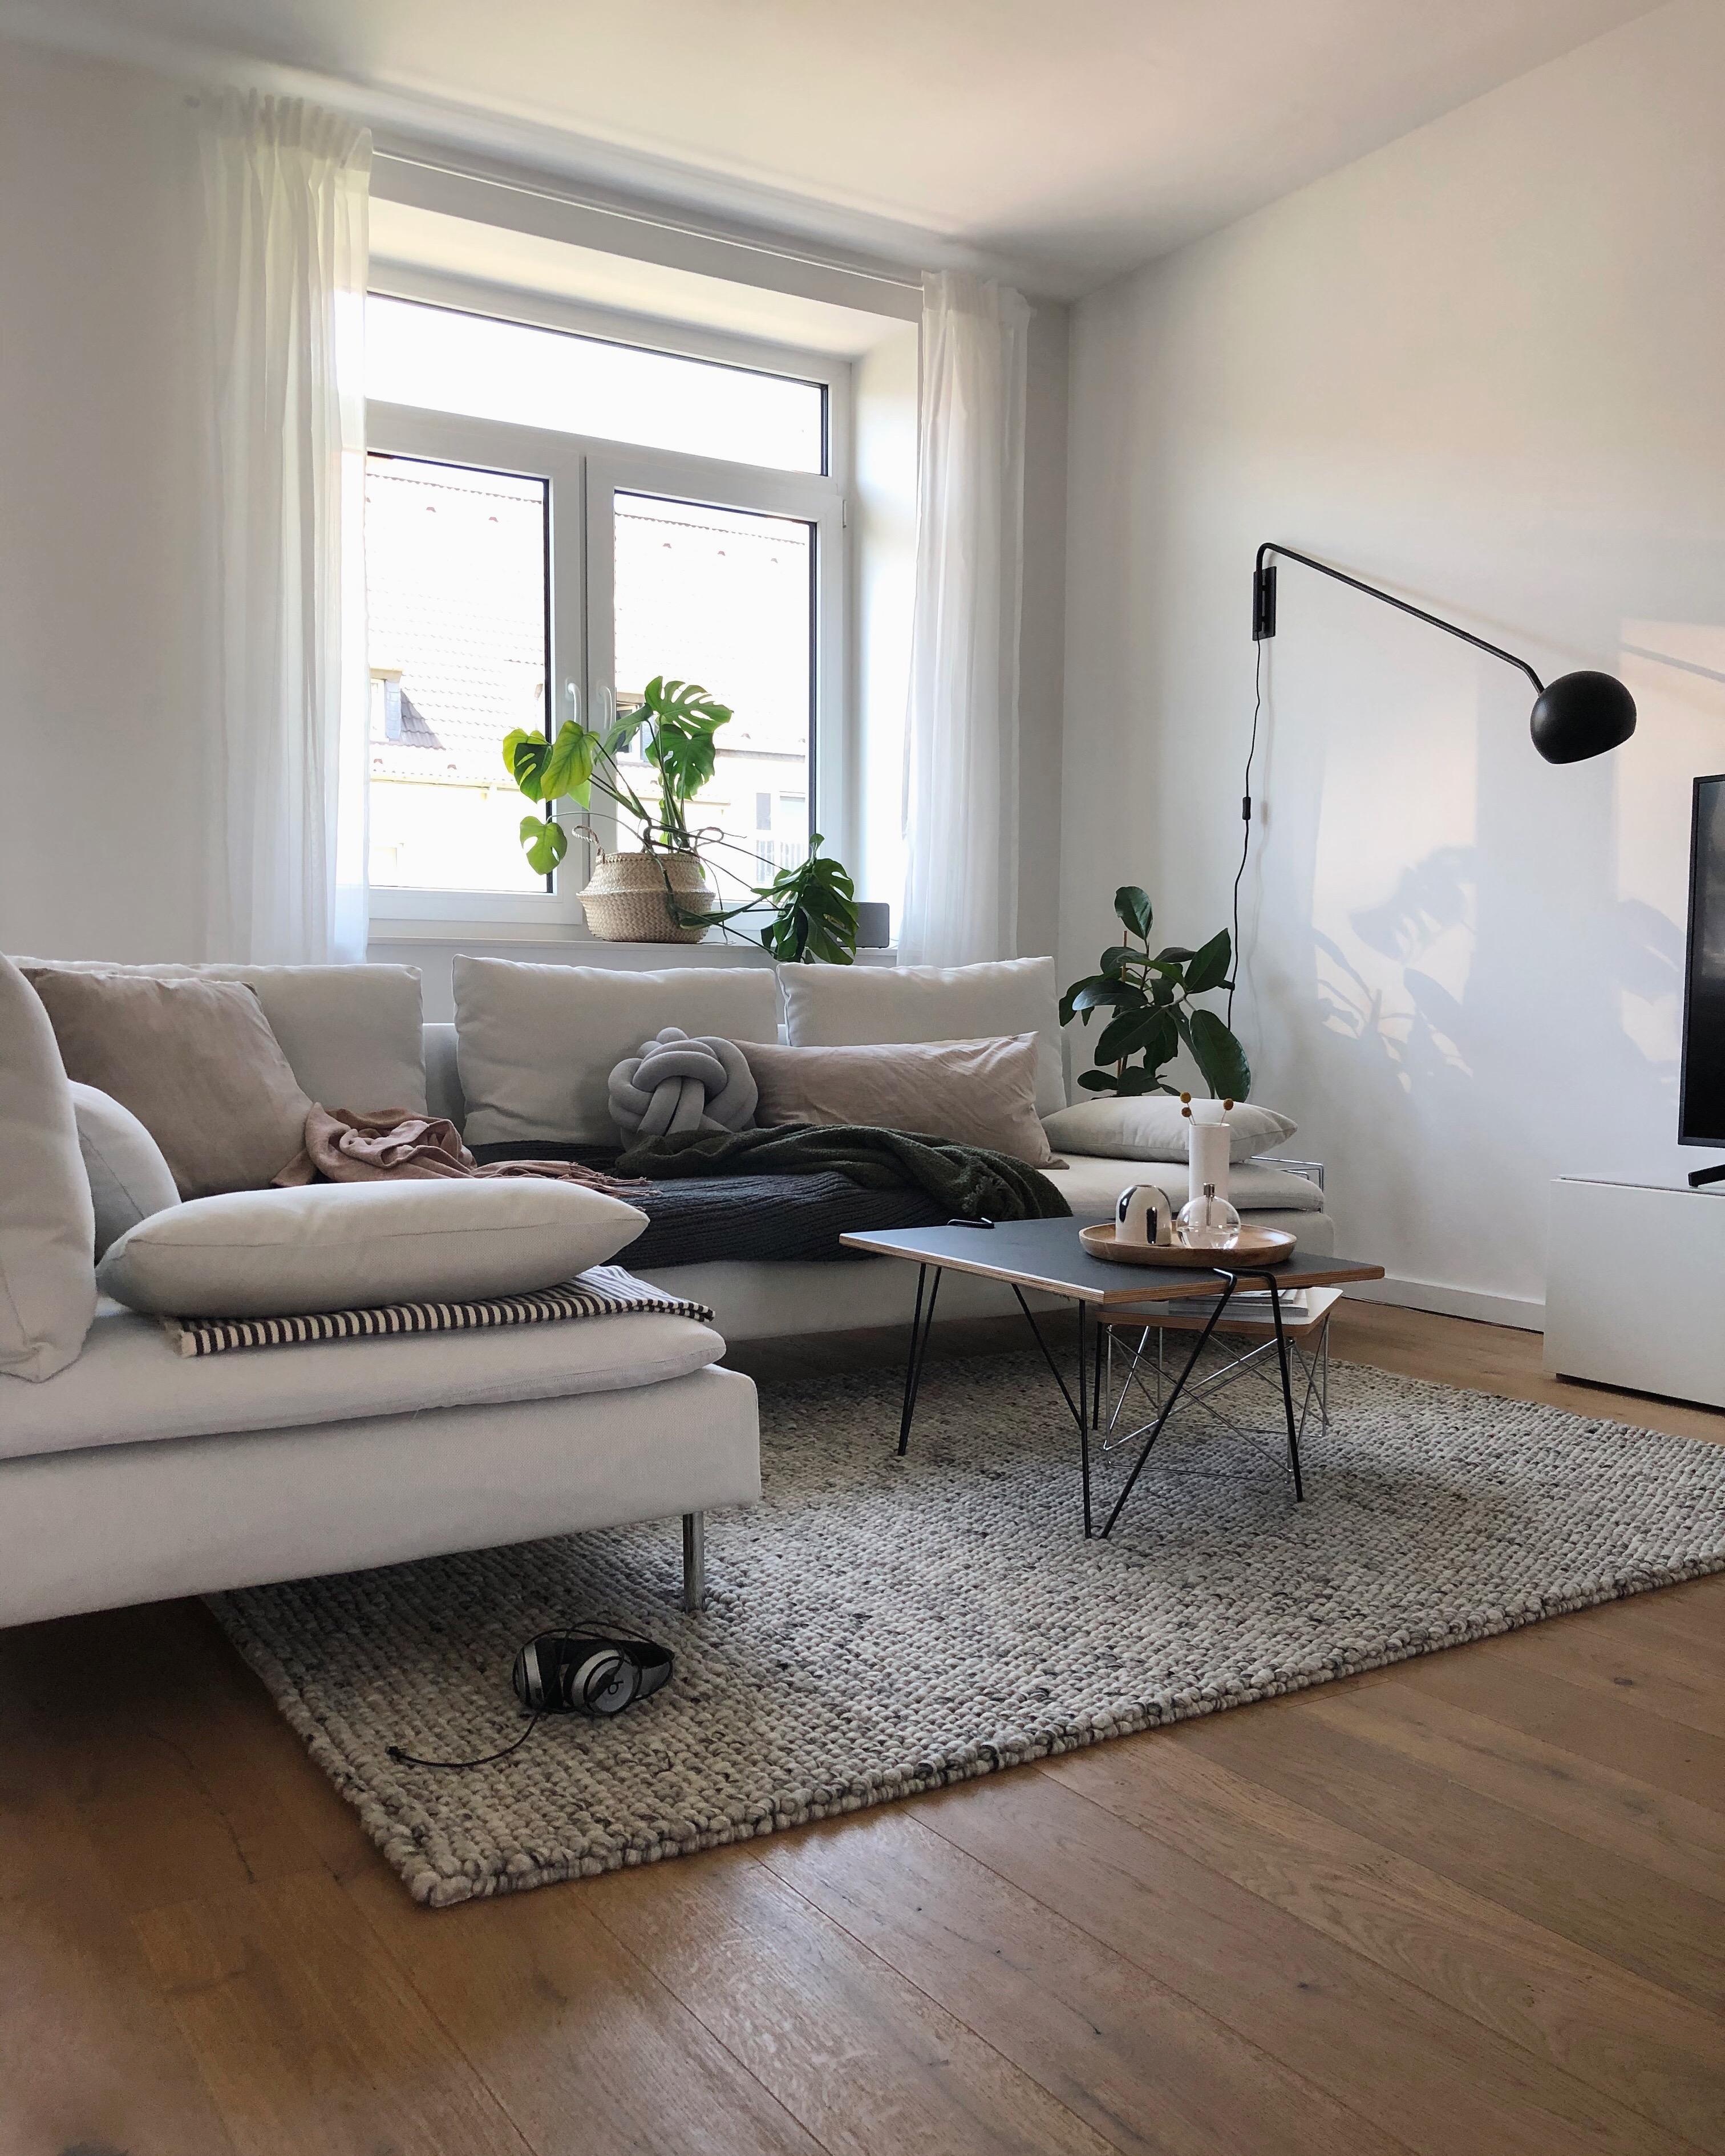 Guten Start in die kurze Woche 💛
#wohnzimmer #livingroom #sofa #couch #couchstyle #couchtisch #interior #wanddeko